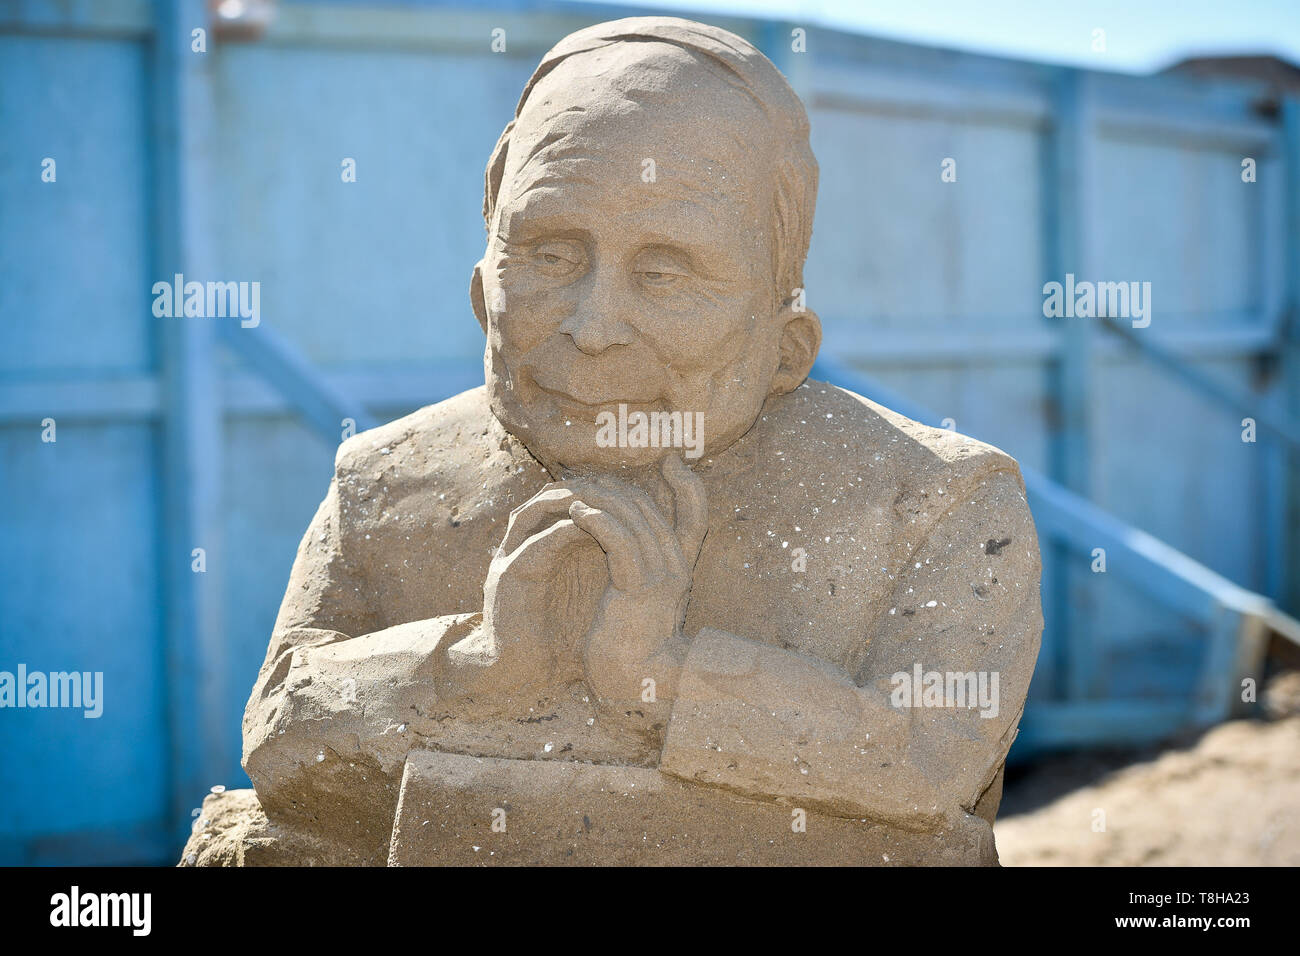 Le président russe Vladimir Poutine sur le visage d'un Brexit sculpture à thème au Festival de sculptures de sable, Weston Weston-super-Mare. Banque D'Images